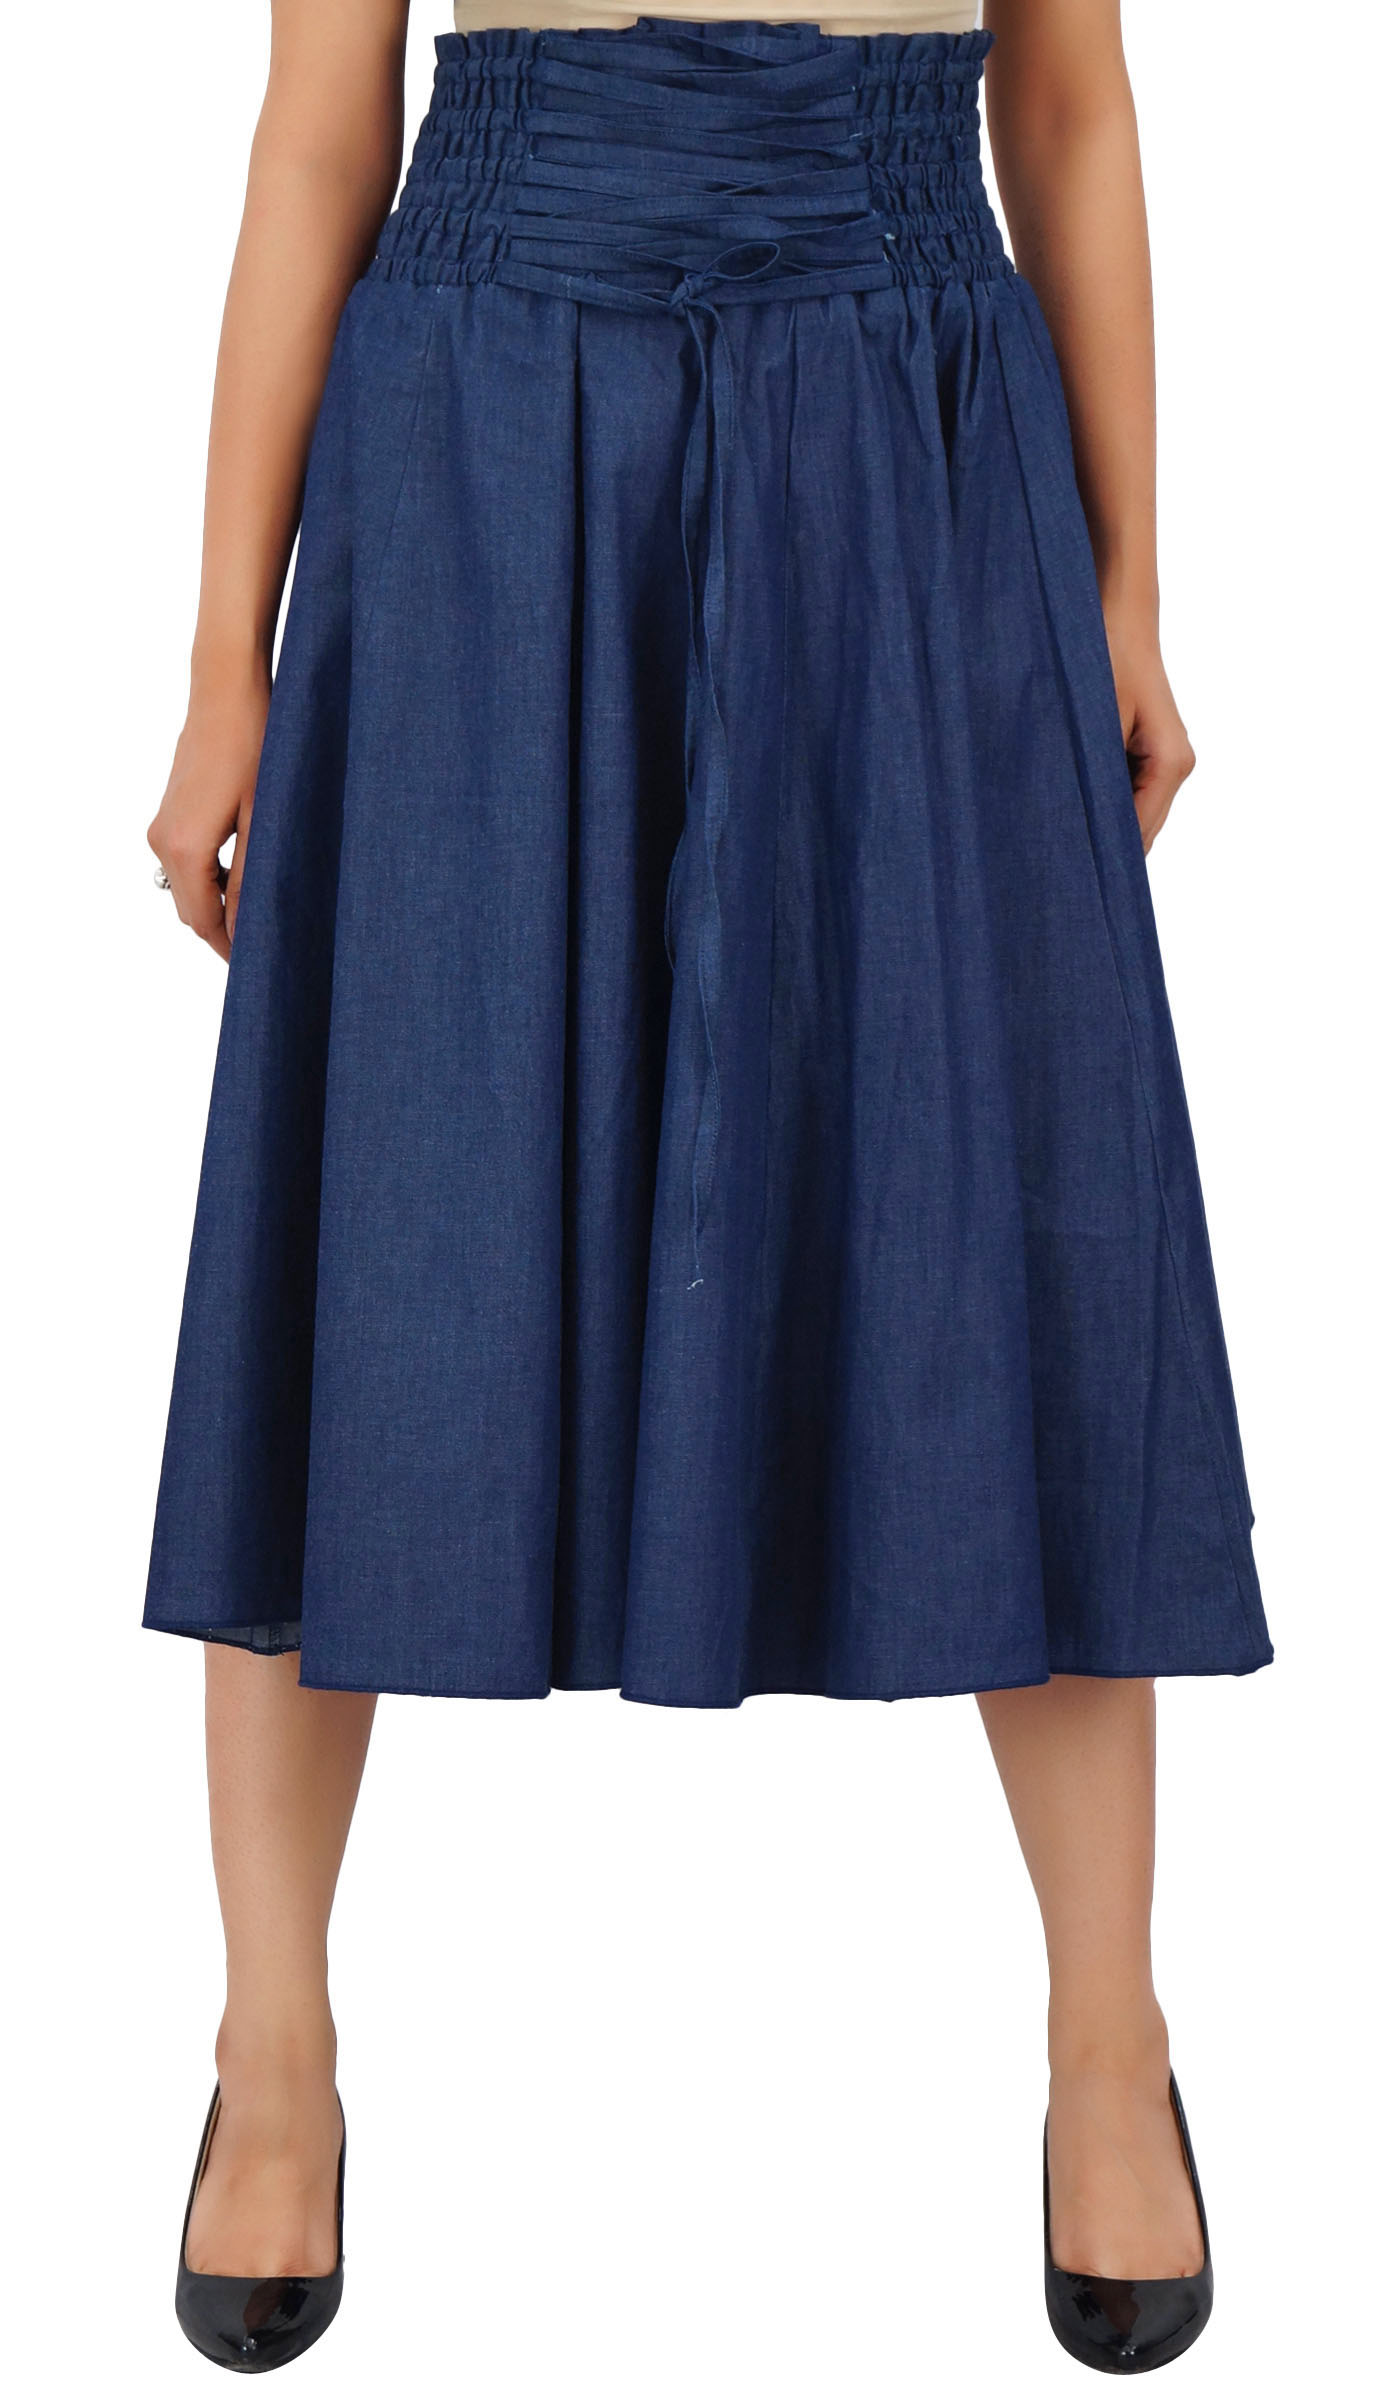 Bimba Navy Blue High Waist Denim Skirt a-line Smocked Waist Designer ...